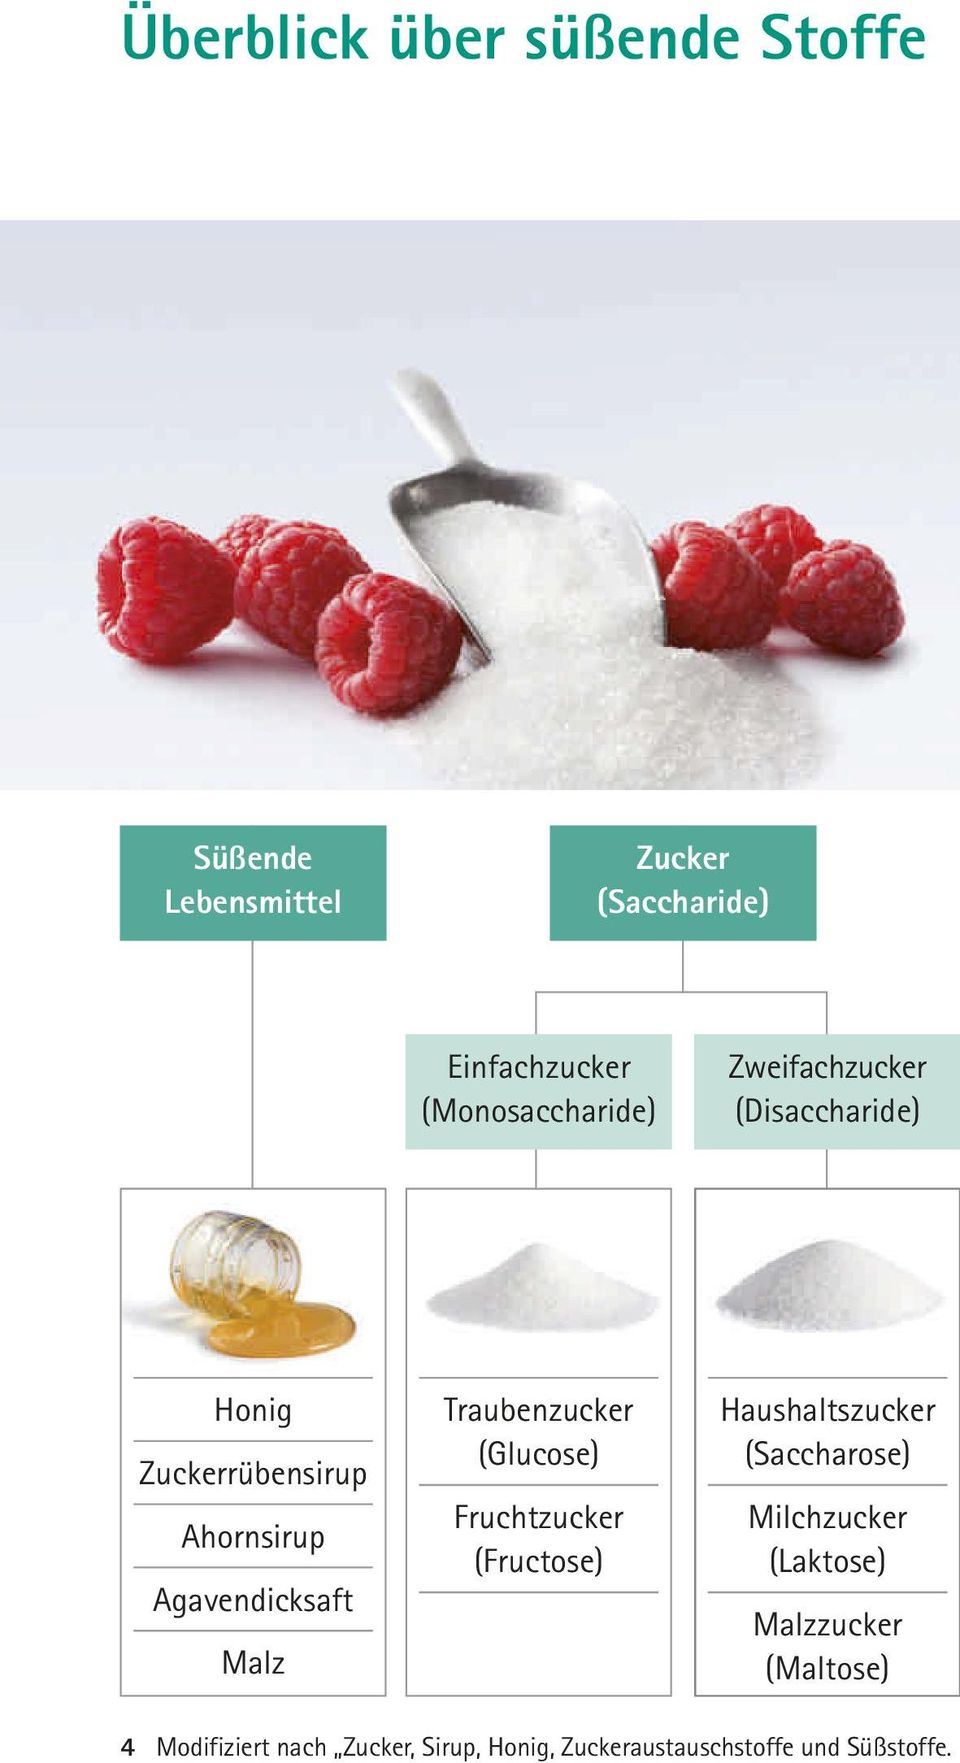 Malz Traubenzucker (Glucose) Fruchtzucker (Fructose) Haushaltszucker (Saccharose) Milchzucker